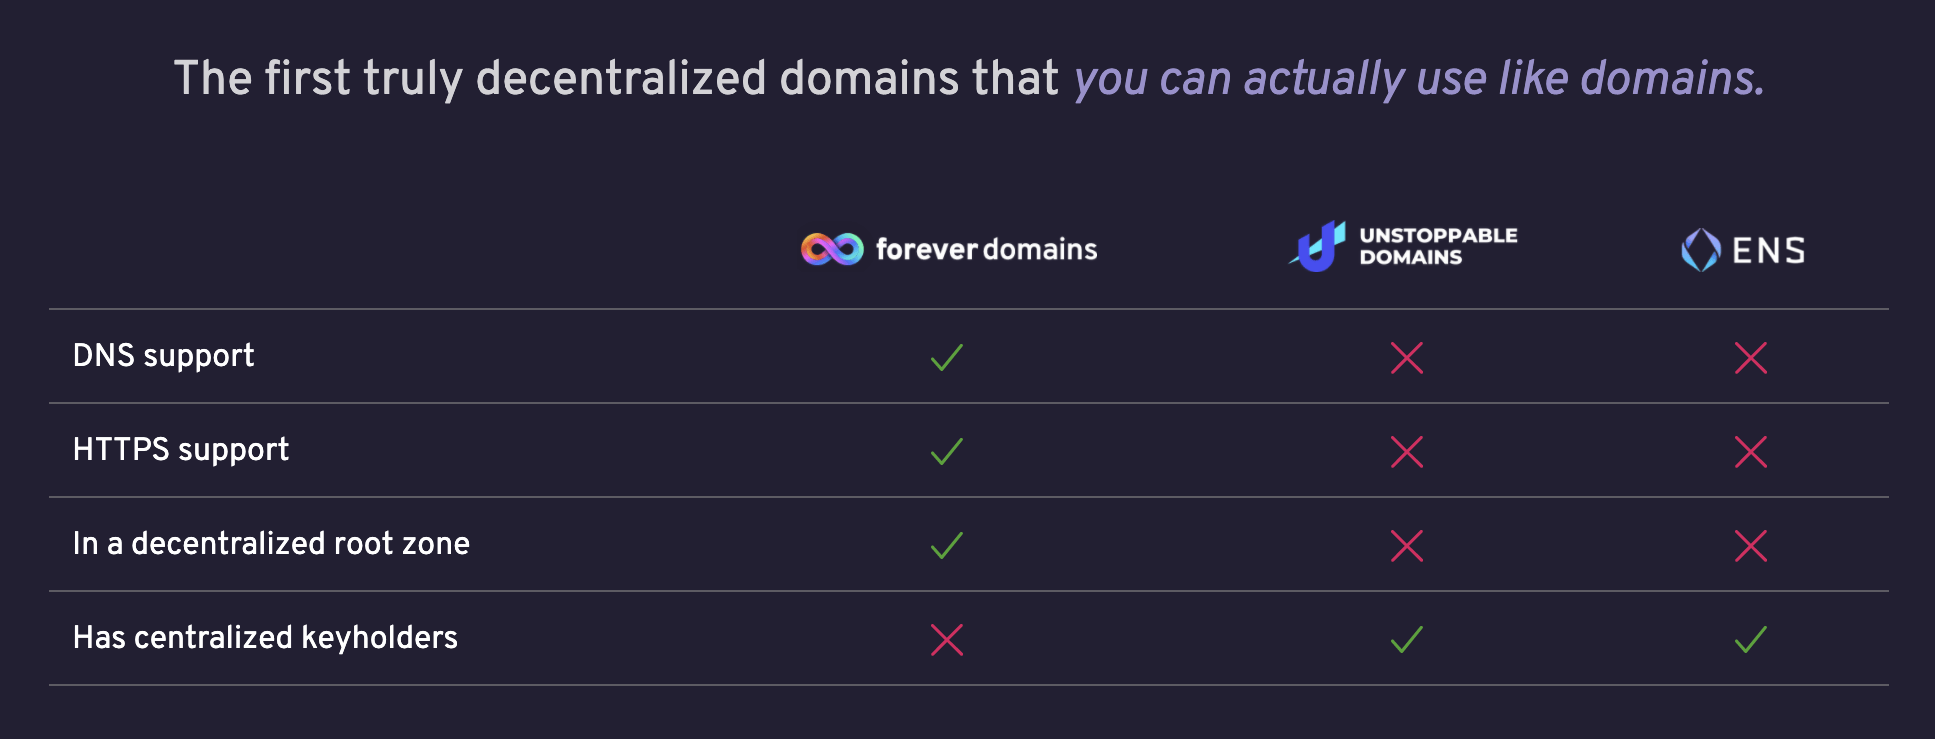 Forever Domains comparison